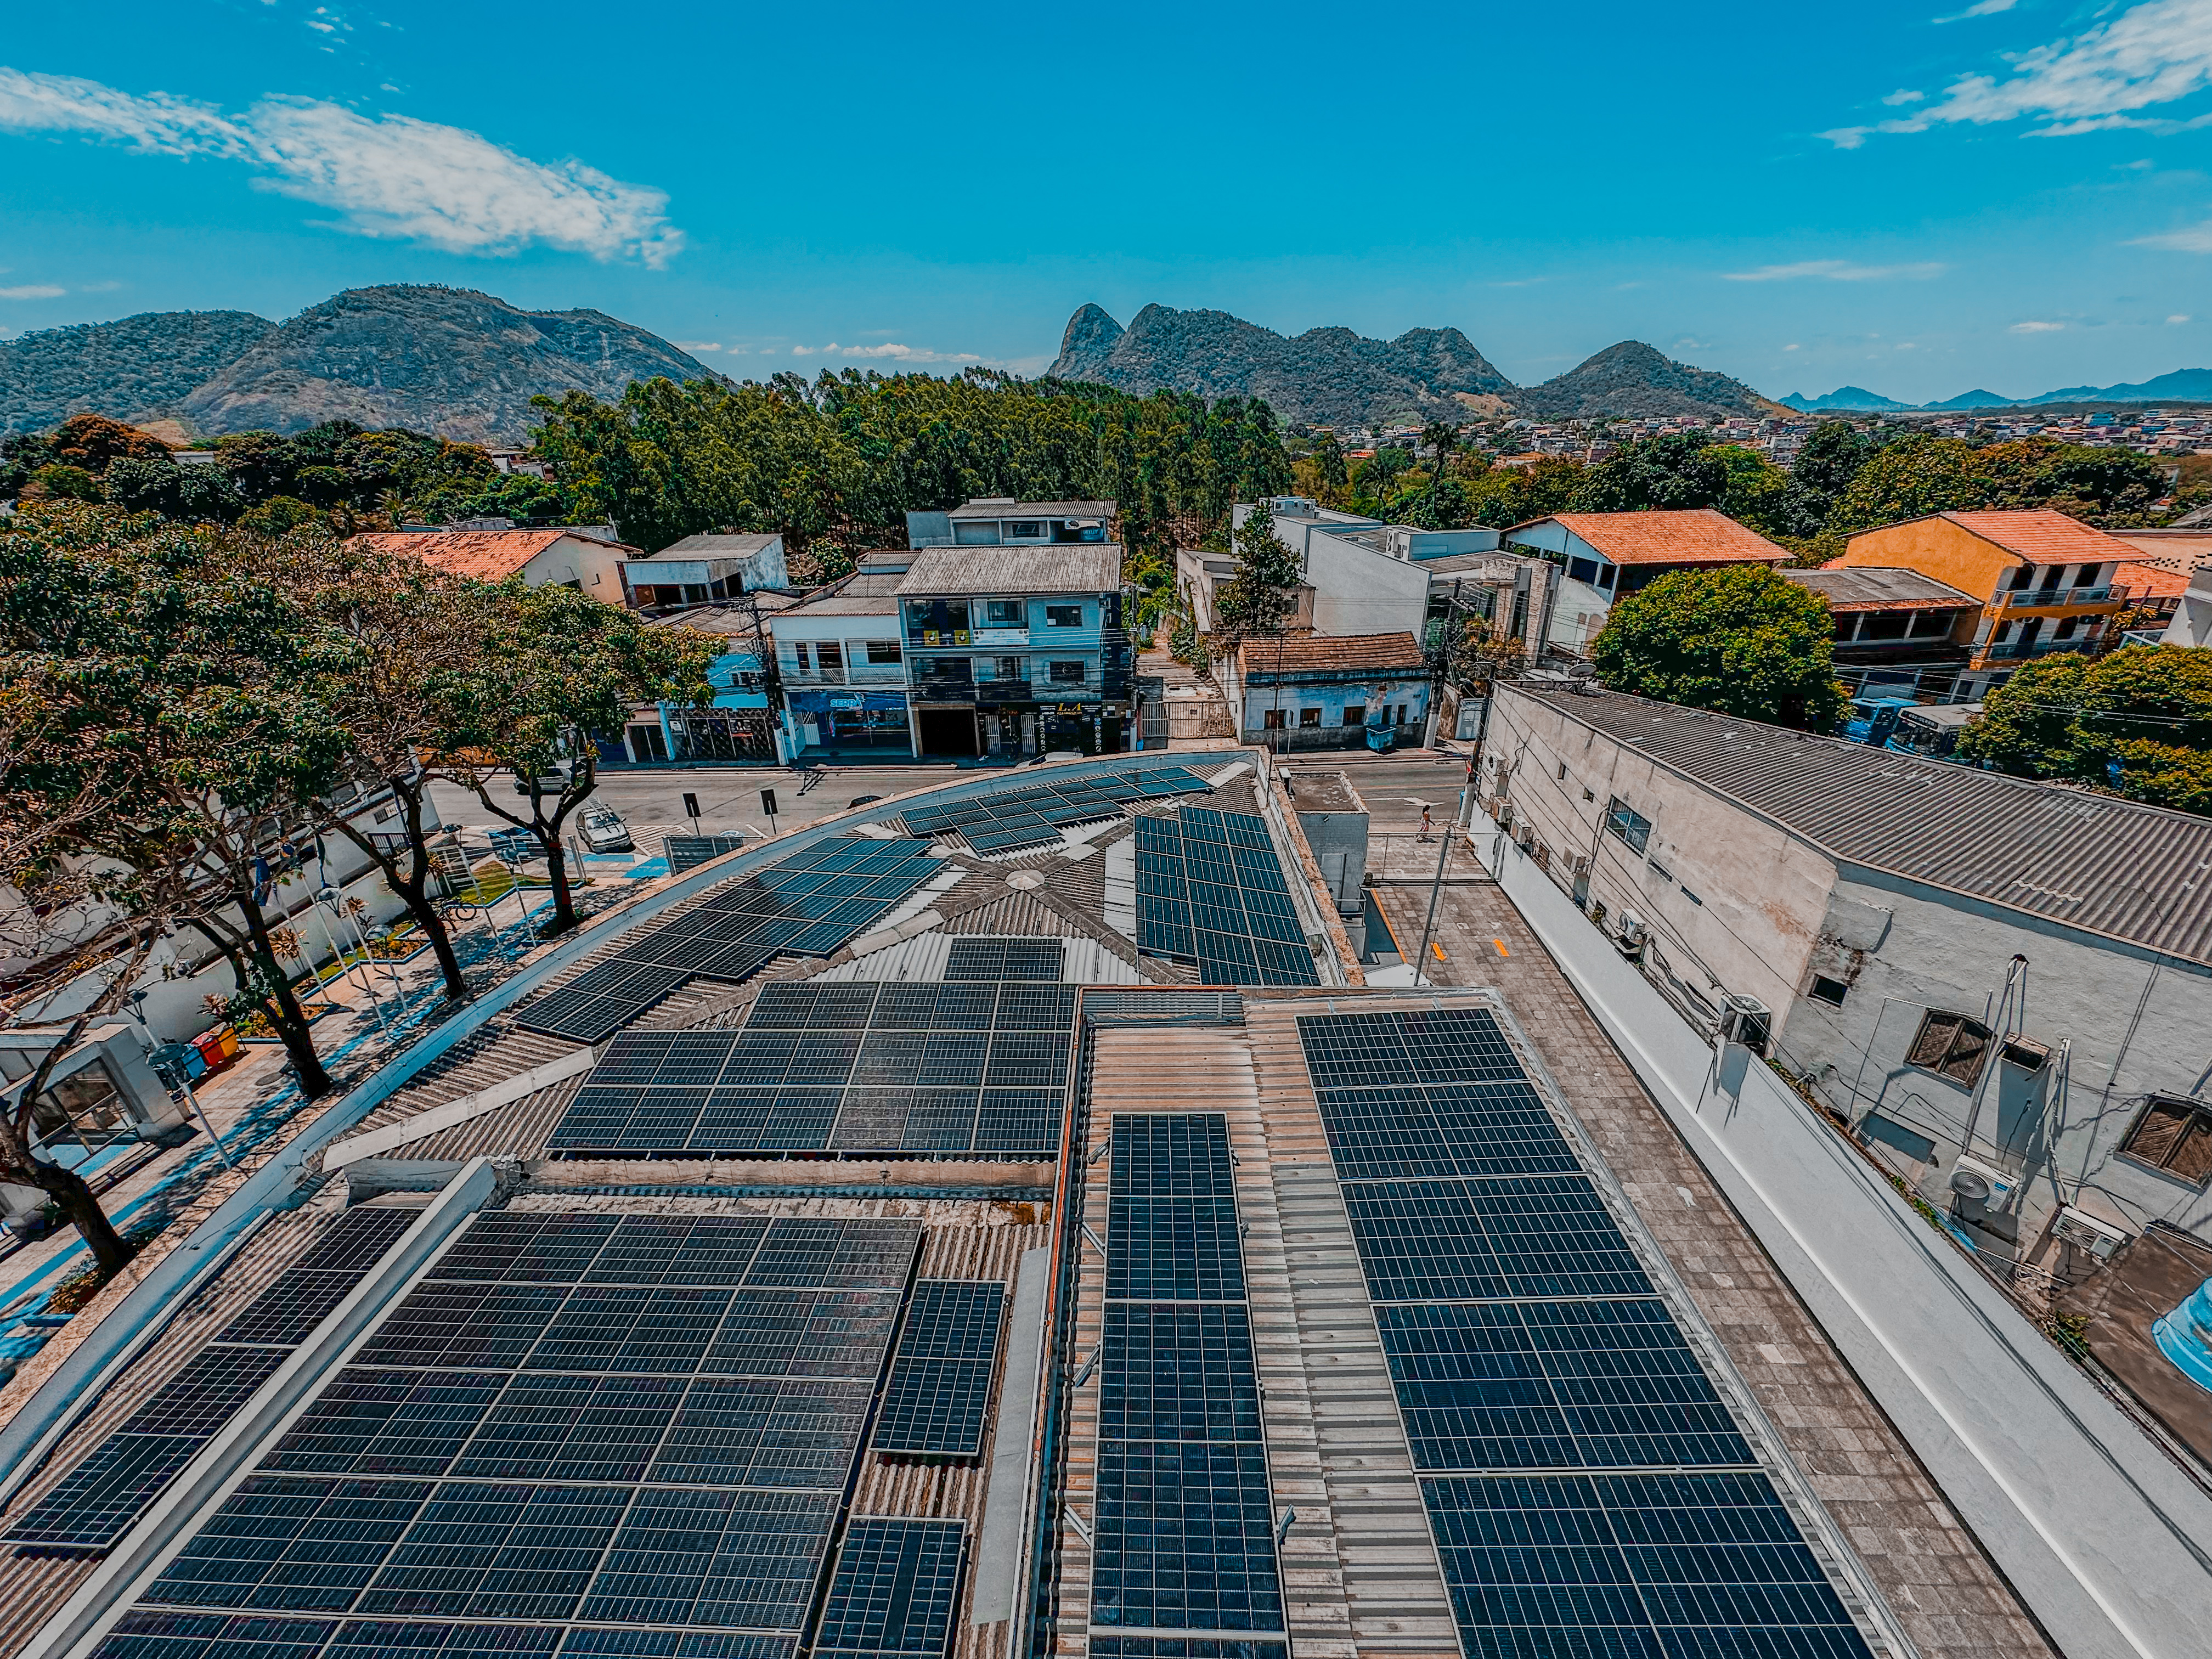 NOTÍCIA: Economia e compromisso com o meio ambiente: Câmara investe em energia solar